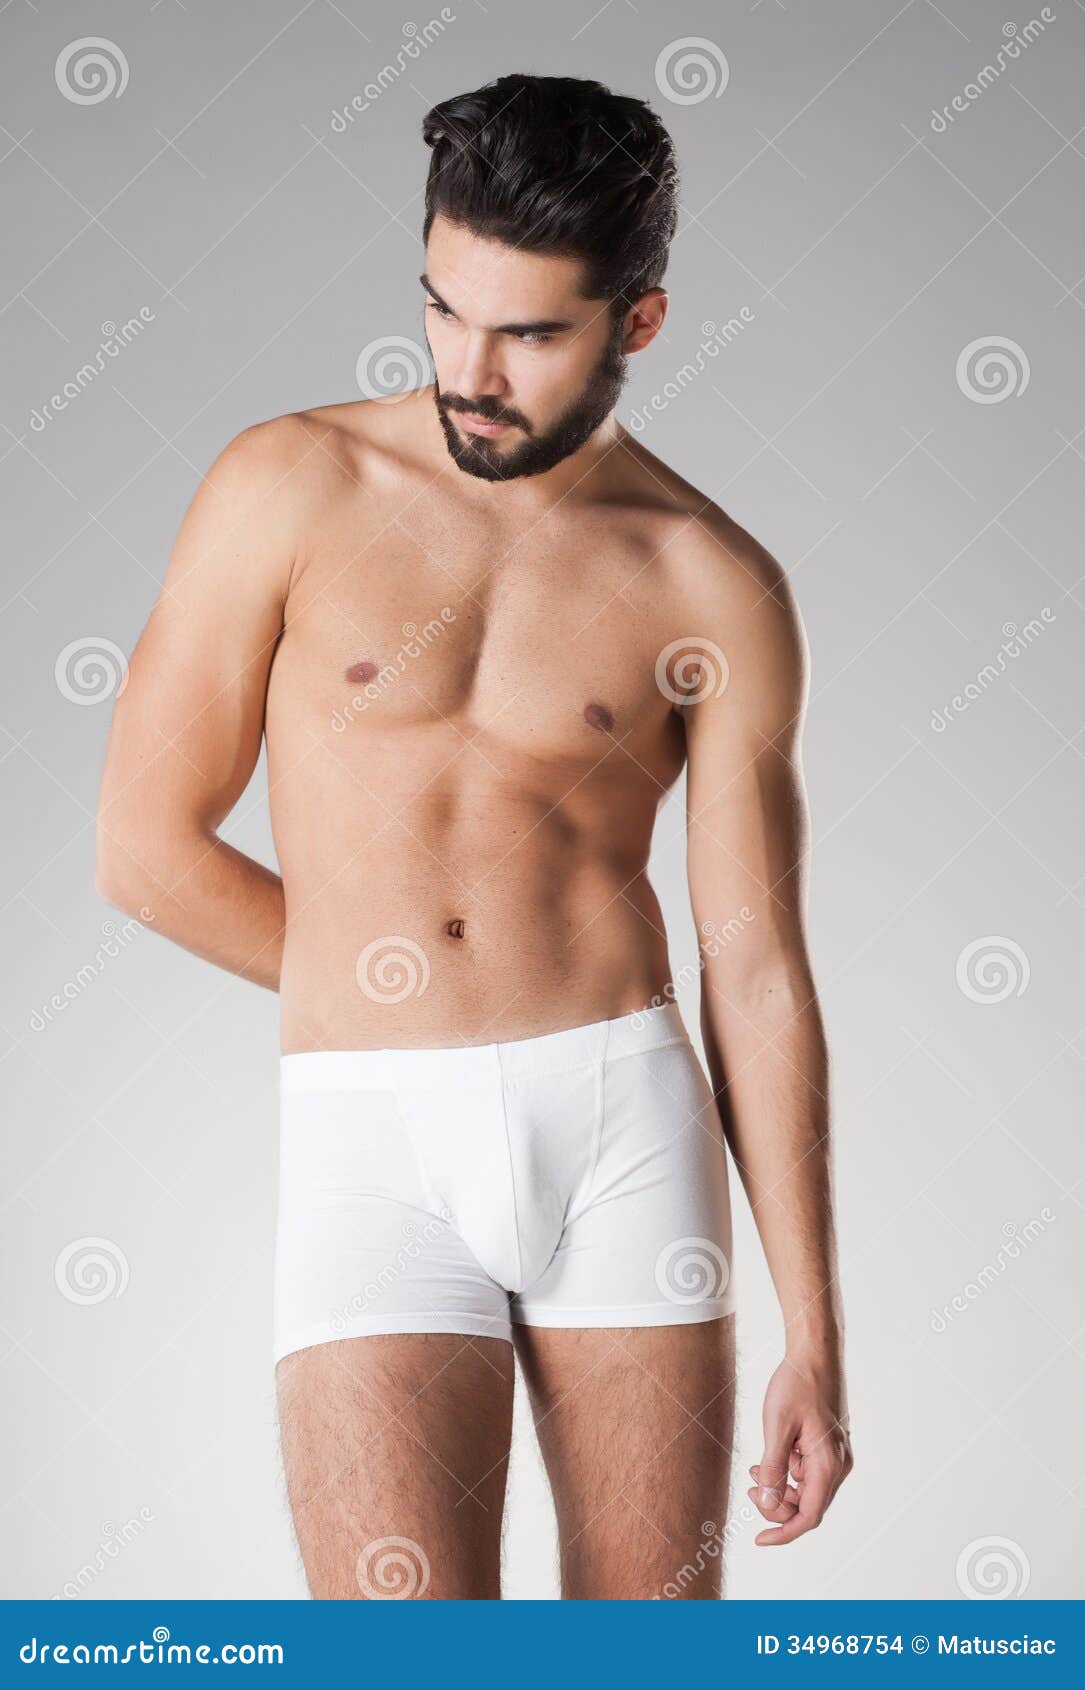 Nude Man Posing 108